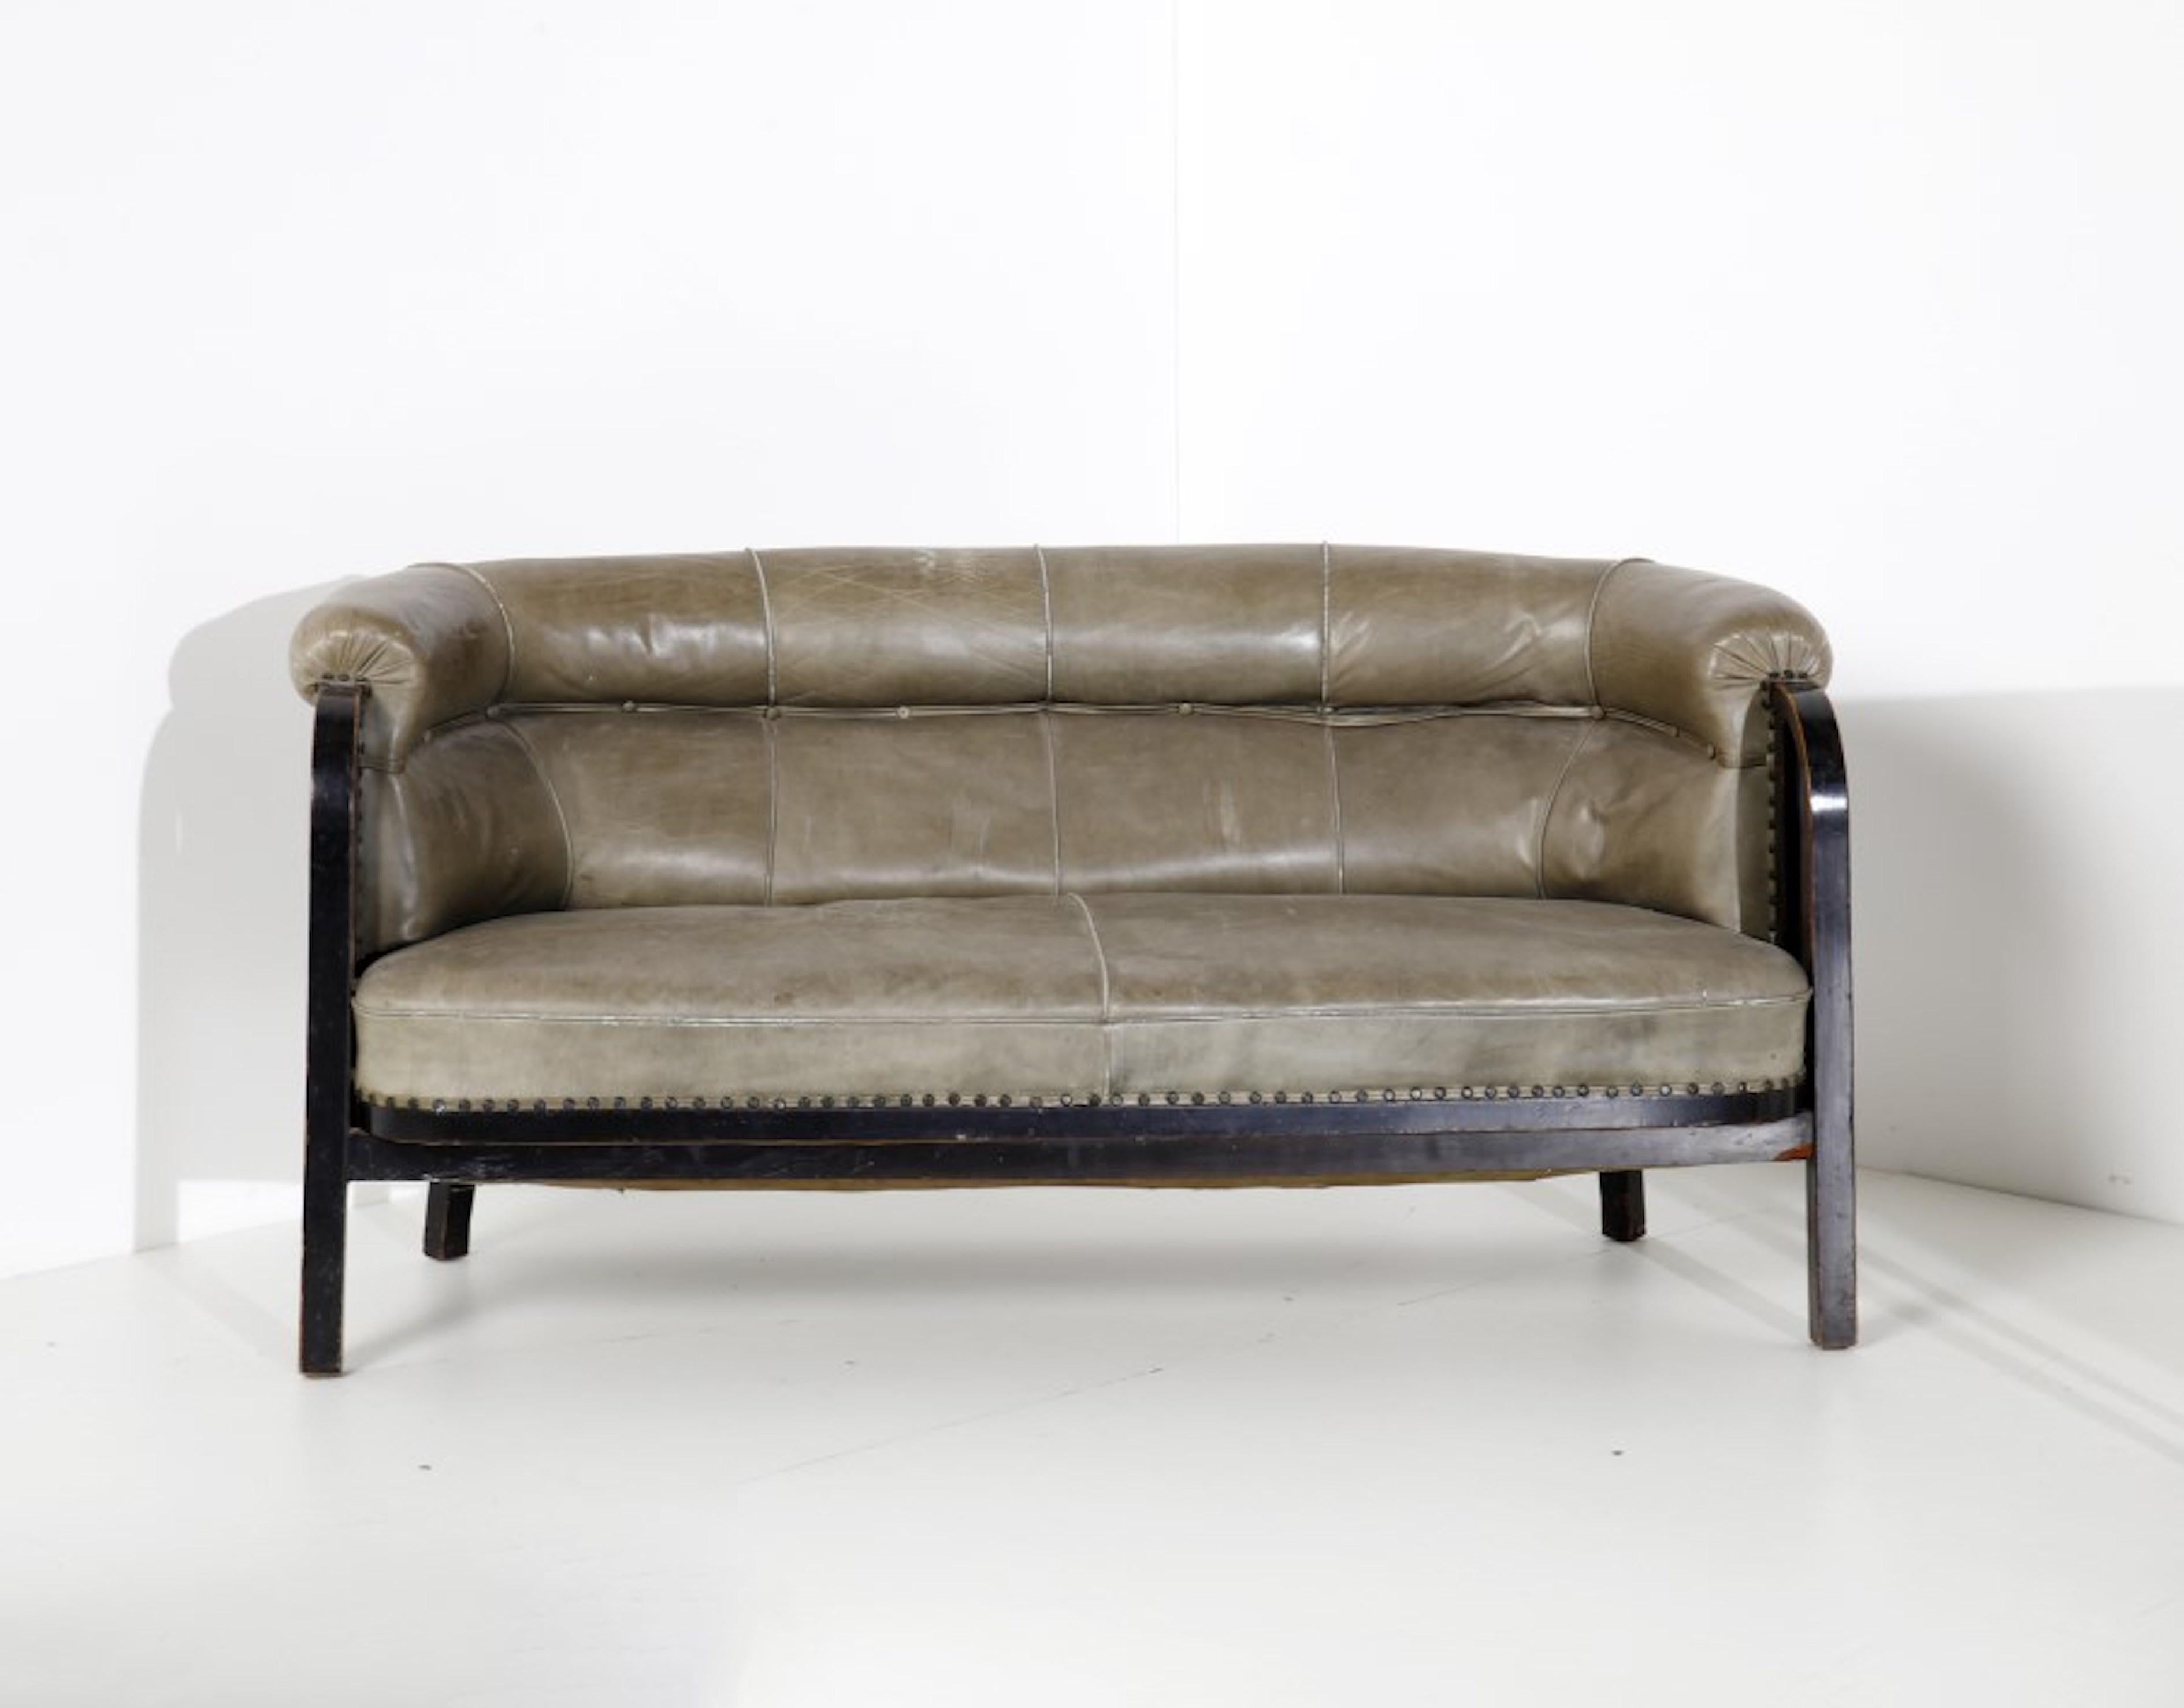 Thonet Sofa Nr. 6533 von Marcel Kammerer, Österreich (Wien),  ab 1910

Das seltene Sofa ist Teil einer größeren Garnitur des berühmten österreichischen Designers Kammerer, zu der auch die entsprechenden Sessel und zwei Stühle gehören. Es handelt